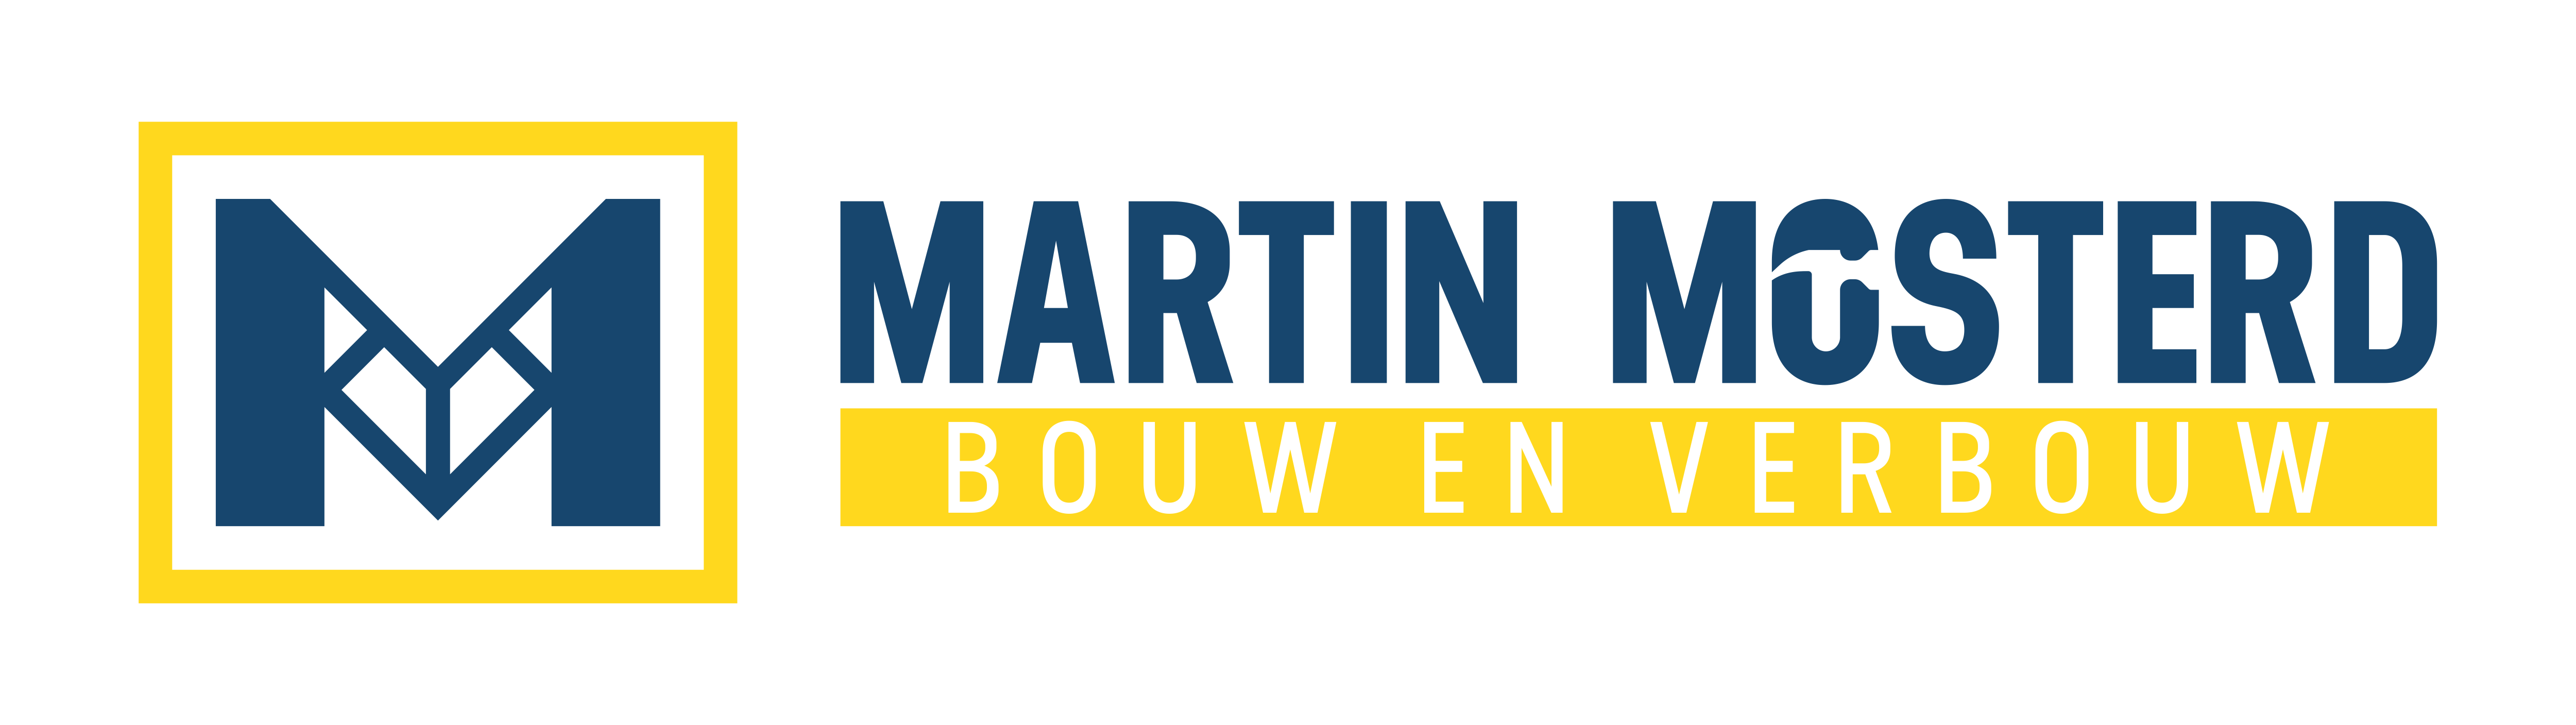 Martin Mosterd Bouw en verbouw